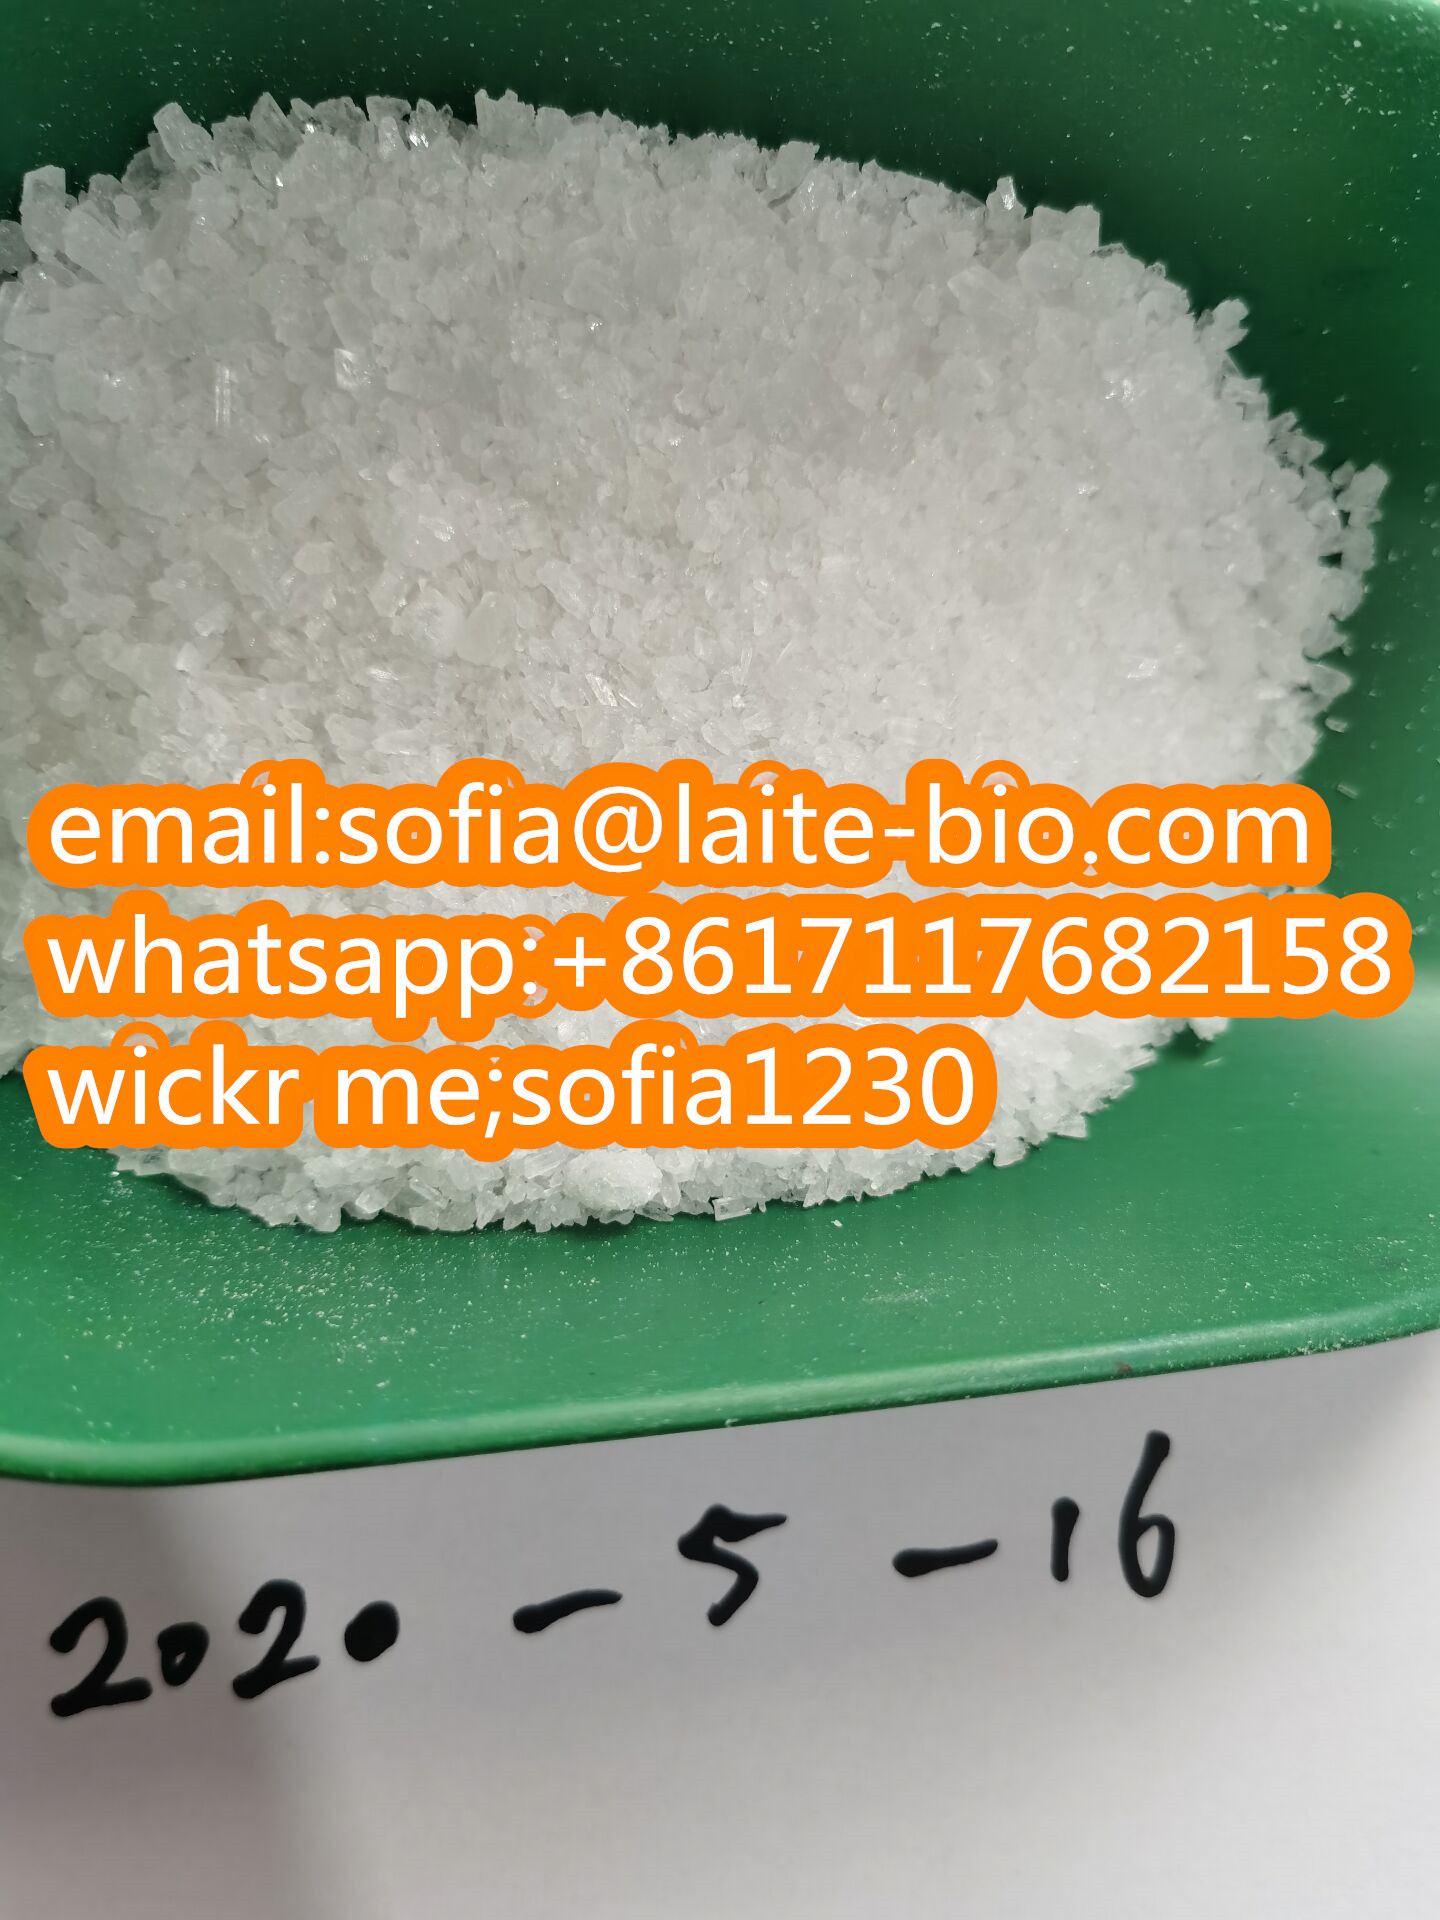 New batch white 2fdck 2f-dck crystals Manufacturer supply(whatsapp:+8617117682158)